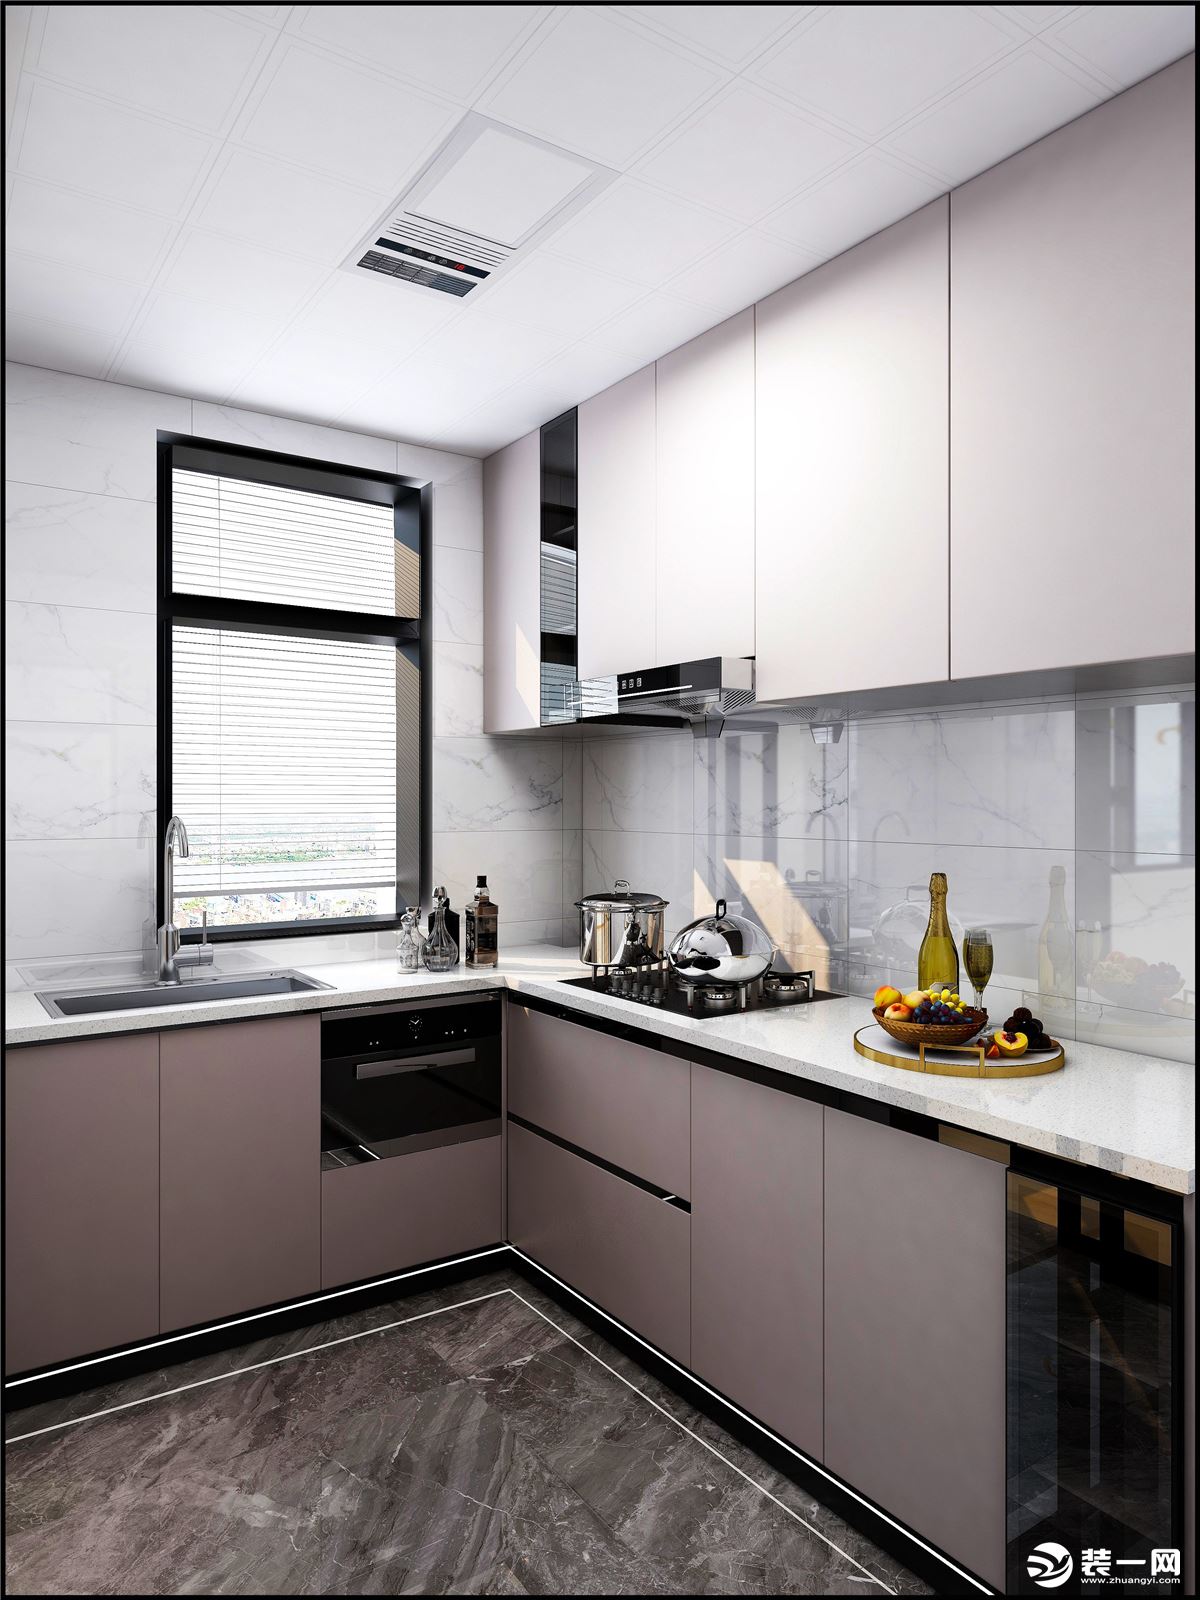 厨房瓷砖猜中了灰色系哑光瓷砖，搭配浅灰色地柜门板和金色把手的结合，让整个空间有了对比度增强了质感。